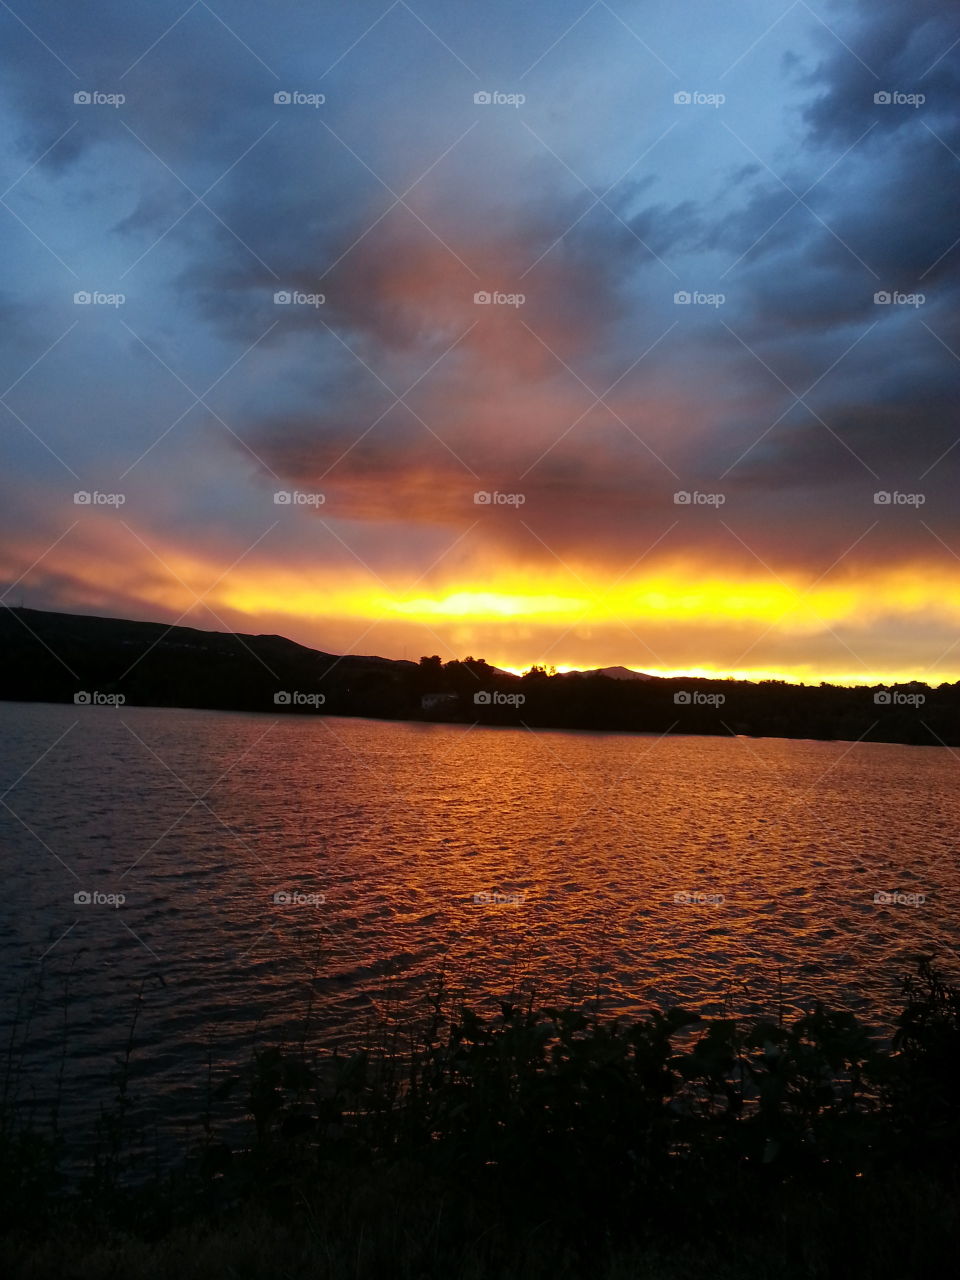 Lit Up. sunset at Main Lake in Lakewood Colorado